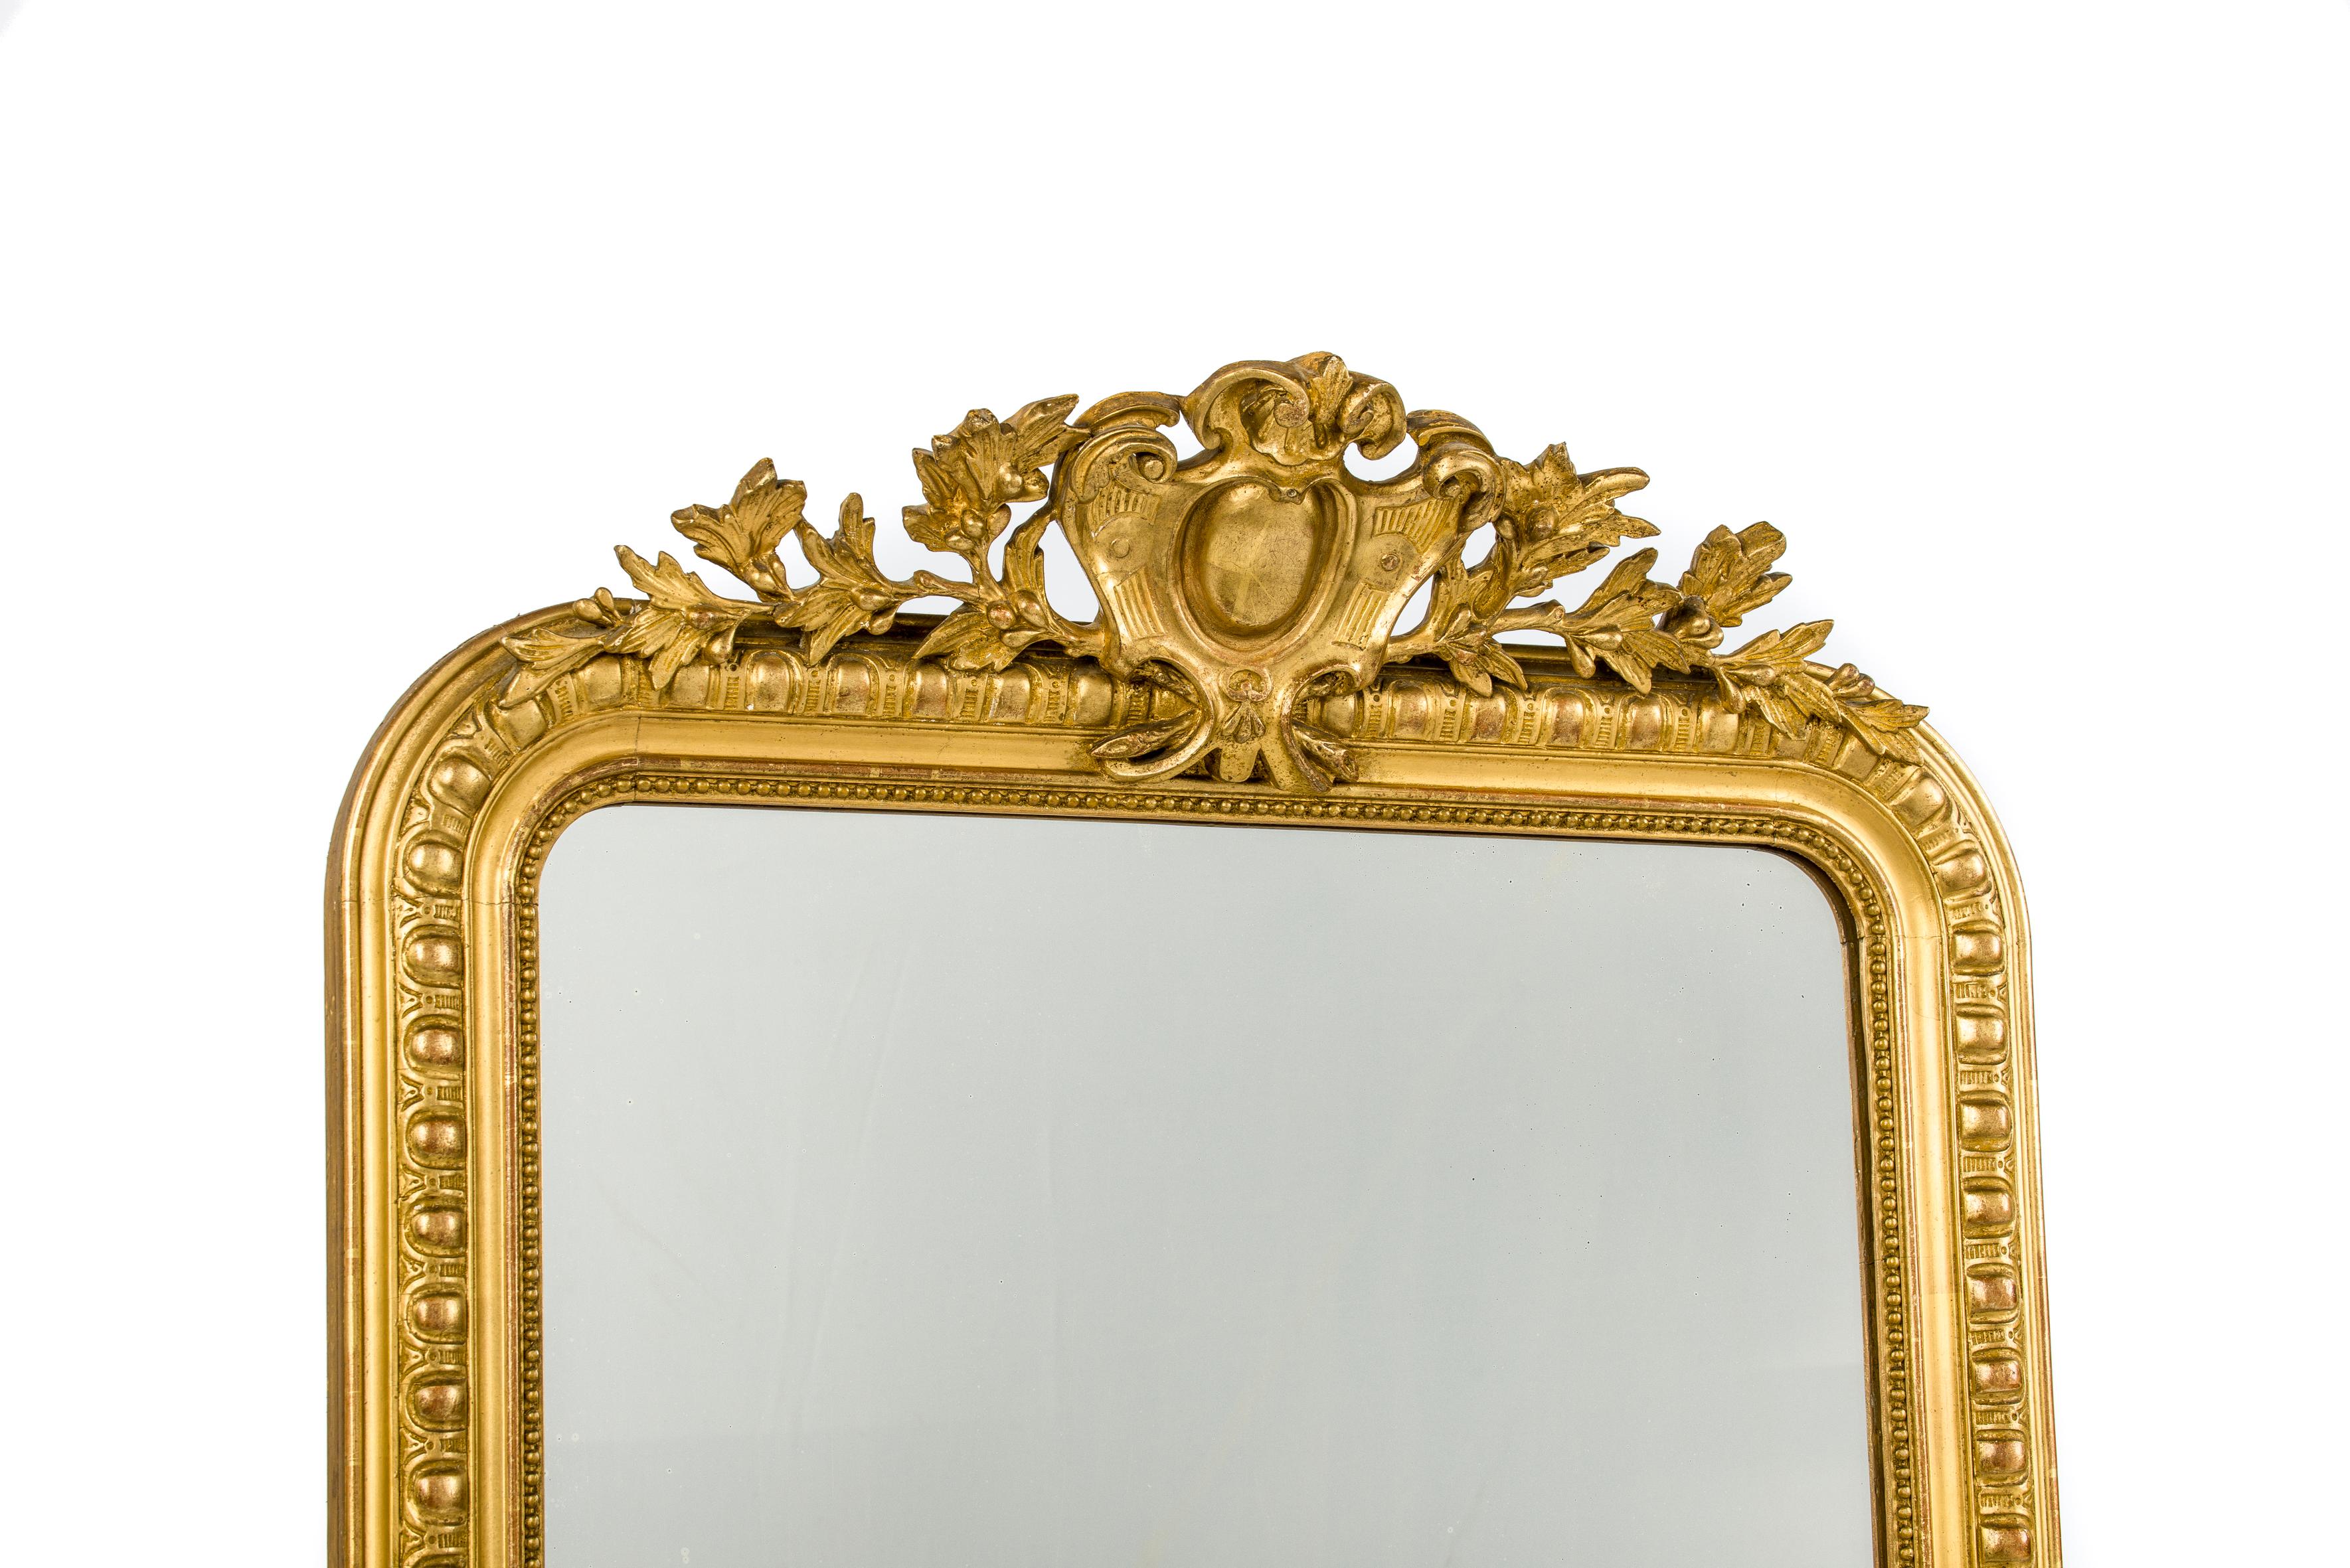 Dieser schöne antike Spiegel wurde Mitte des 19. Jahrhunderts in Südfrankreich hergestellt. Er hat die für Louis Philippe-Spiegel typischen oberen abgerundeten Ecken. Der Spiegelrahmen hat ein detailliertes Gadroonprofil und eine klassische